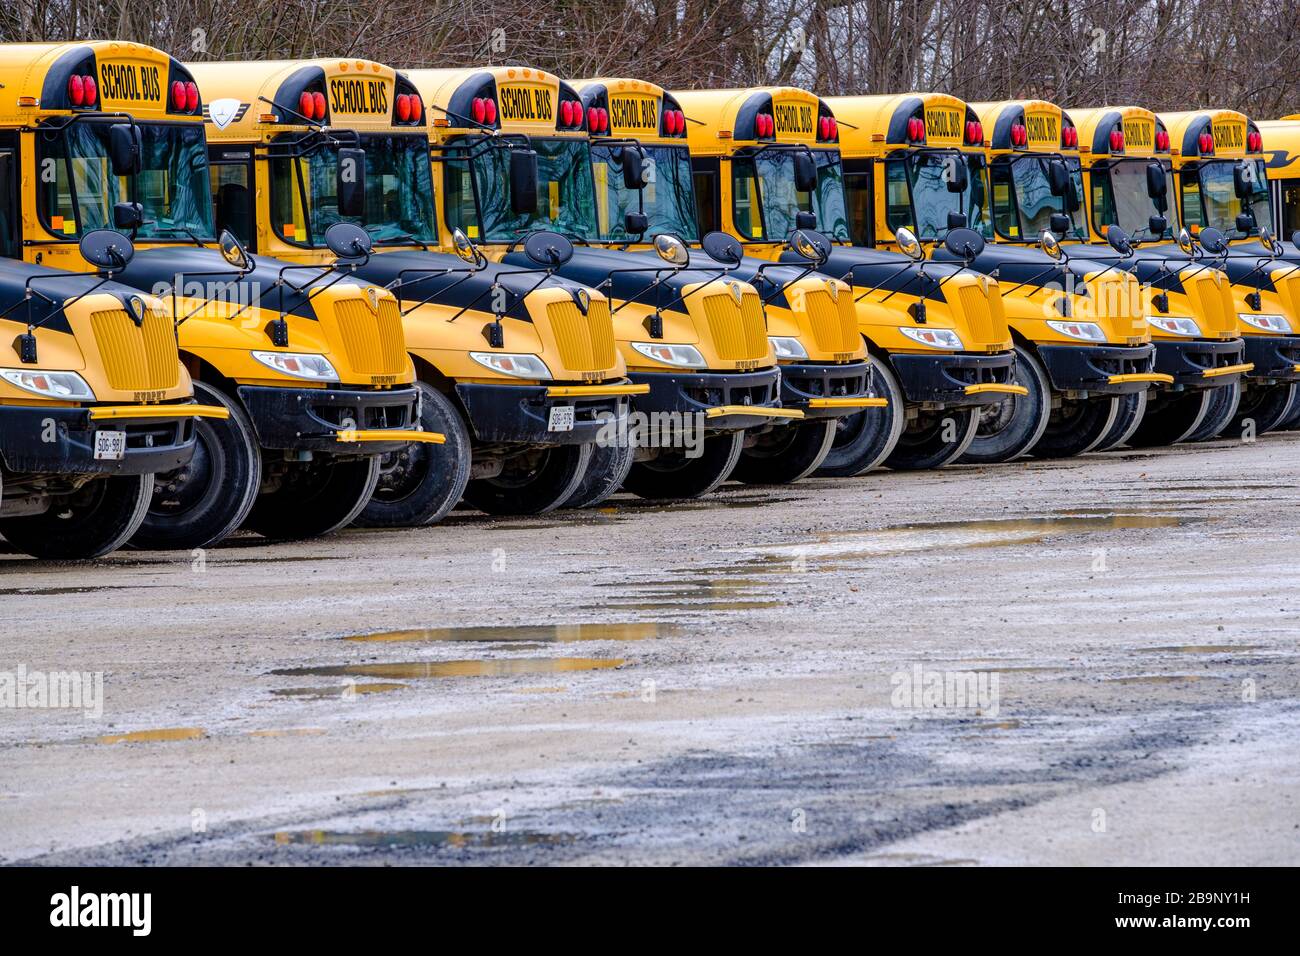 Plusieurs autobus scolaires jaunes stationnés dans un dépôt d'autobus, Ontario, Canada Banque D'Images